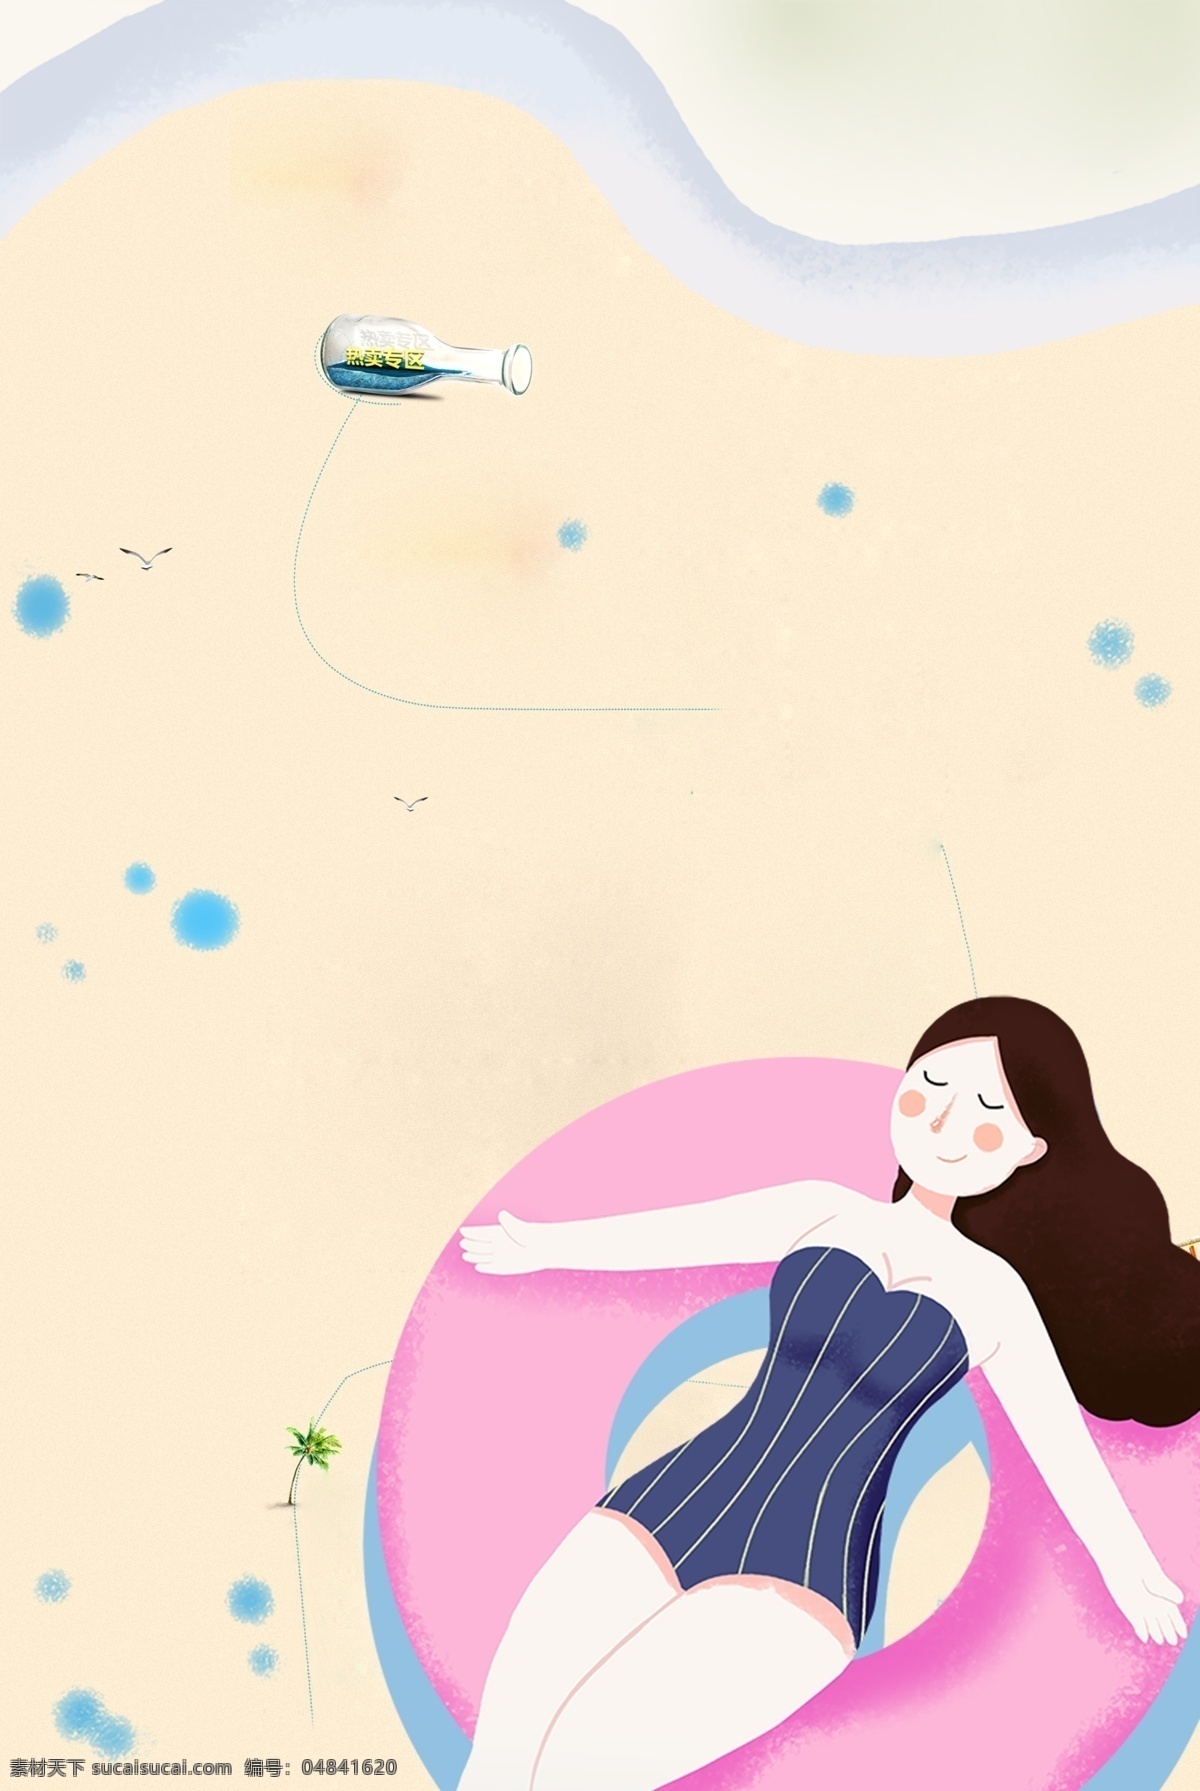 夏季 沙滩 人物 剪影 海报 背景 游泳圈 漂流瓶 蓝色 圆点 休闲 简约 清新